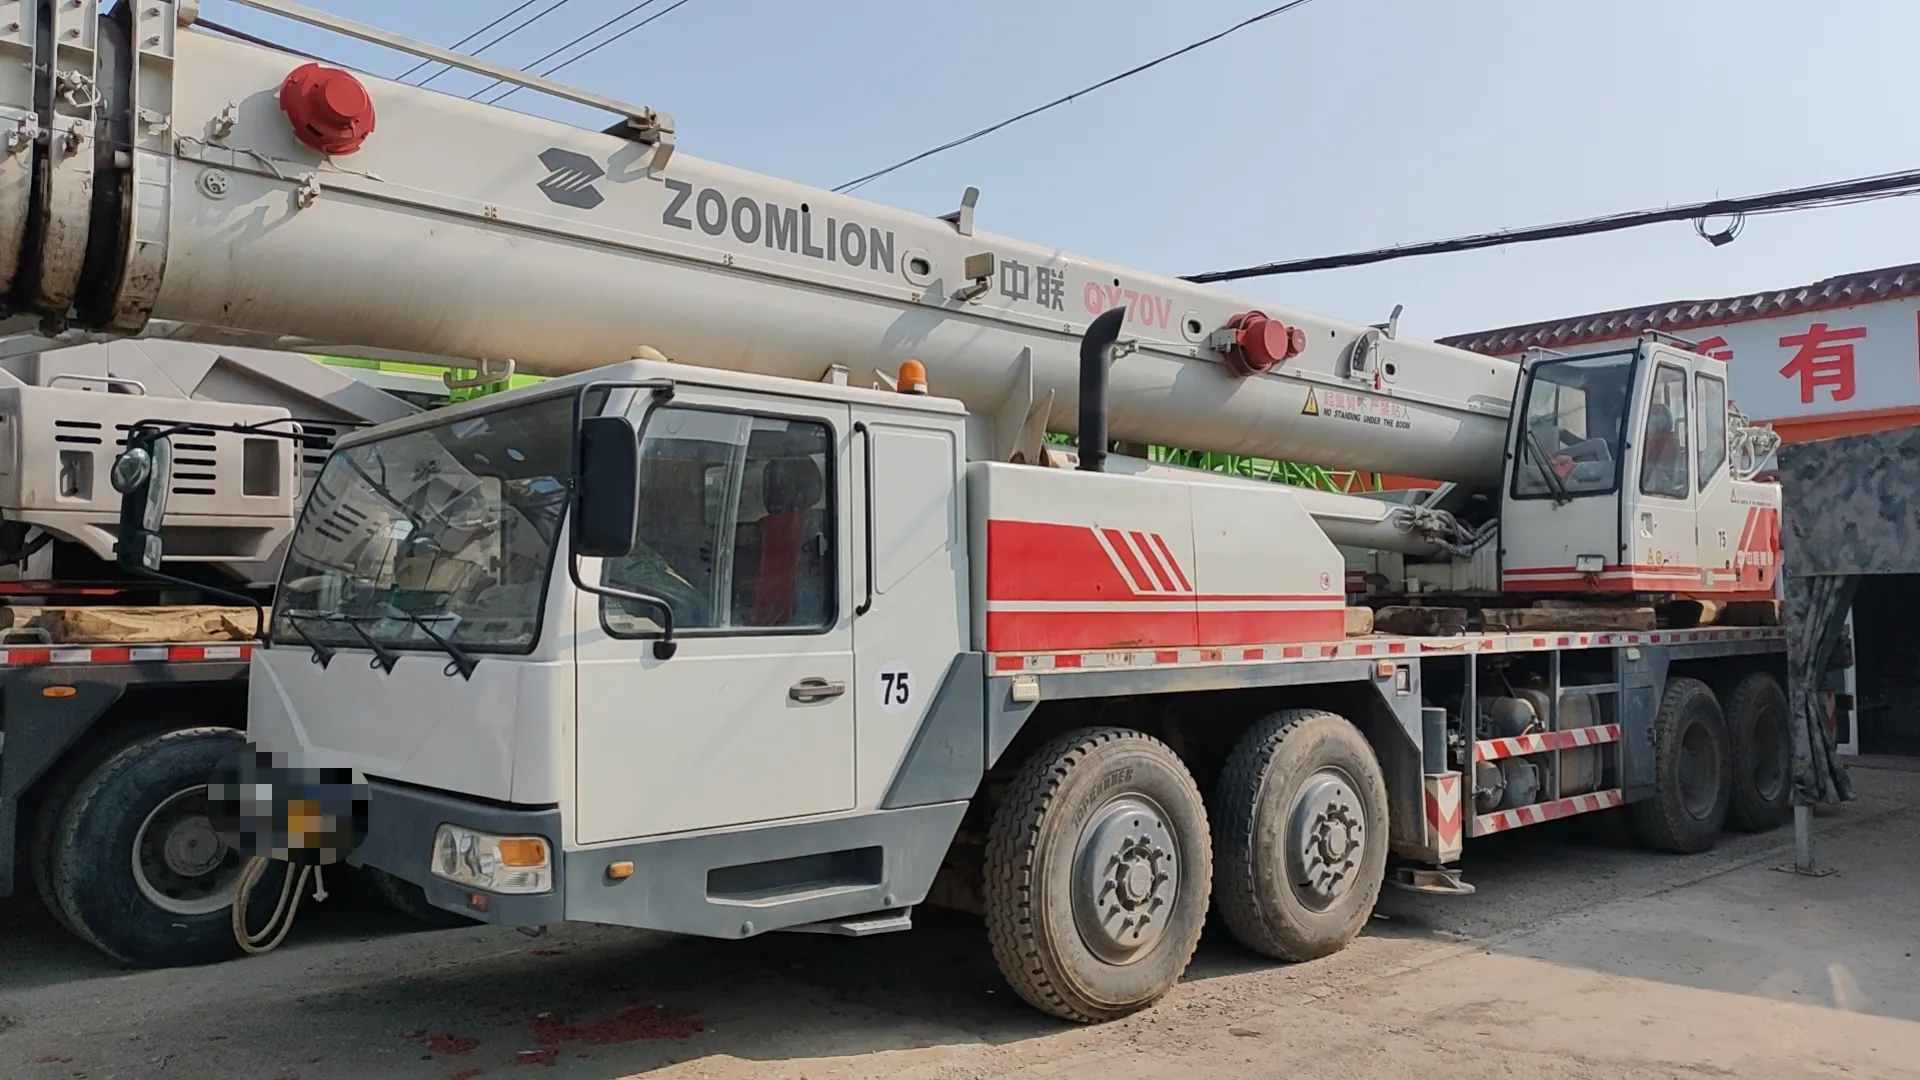 Maquinaria de ingeniería hidráulica móvil con pluma todo terreno de segunda mano de marca superior, grúa de camión de fabricación china de 100 toneladas